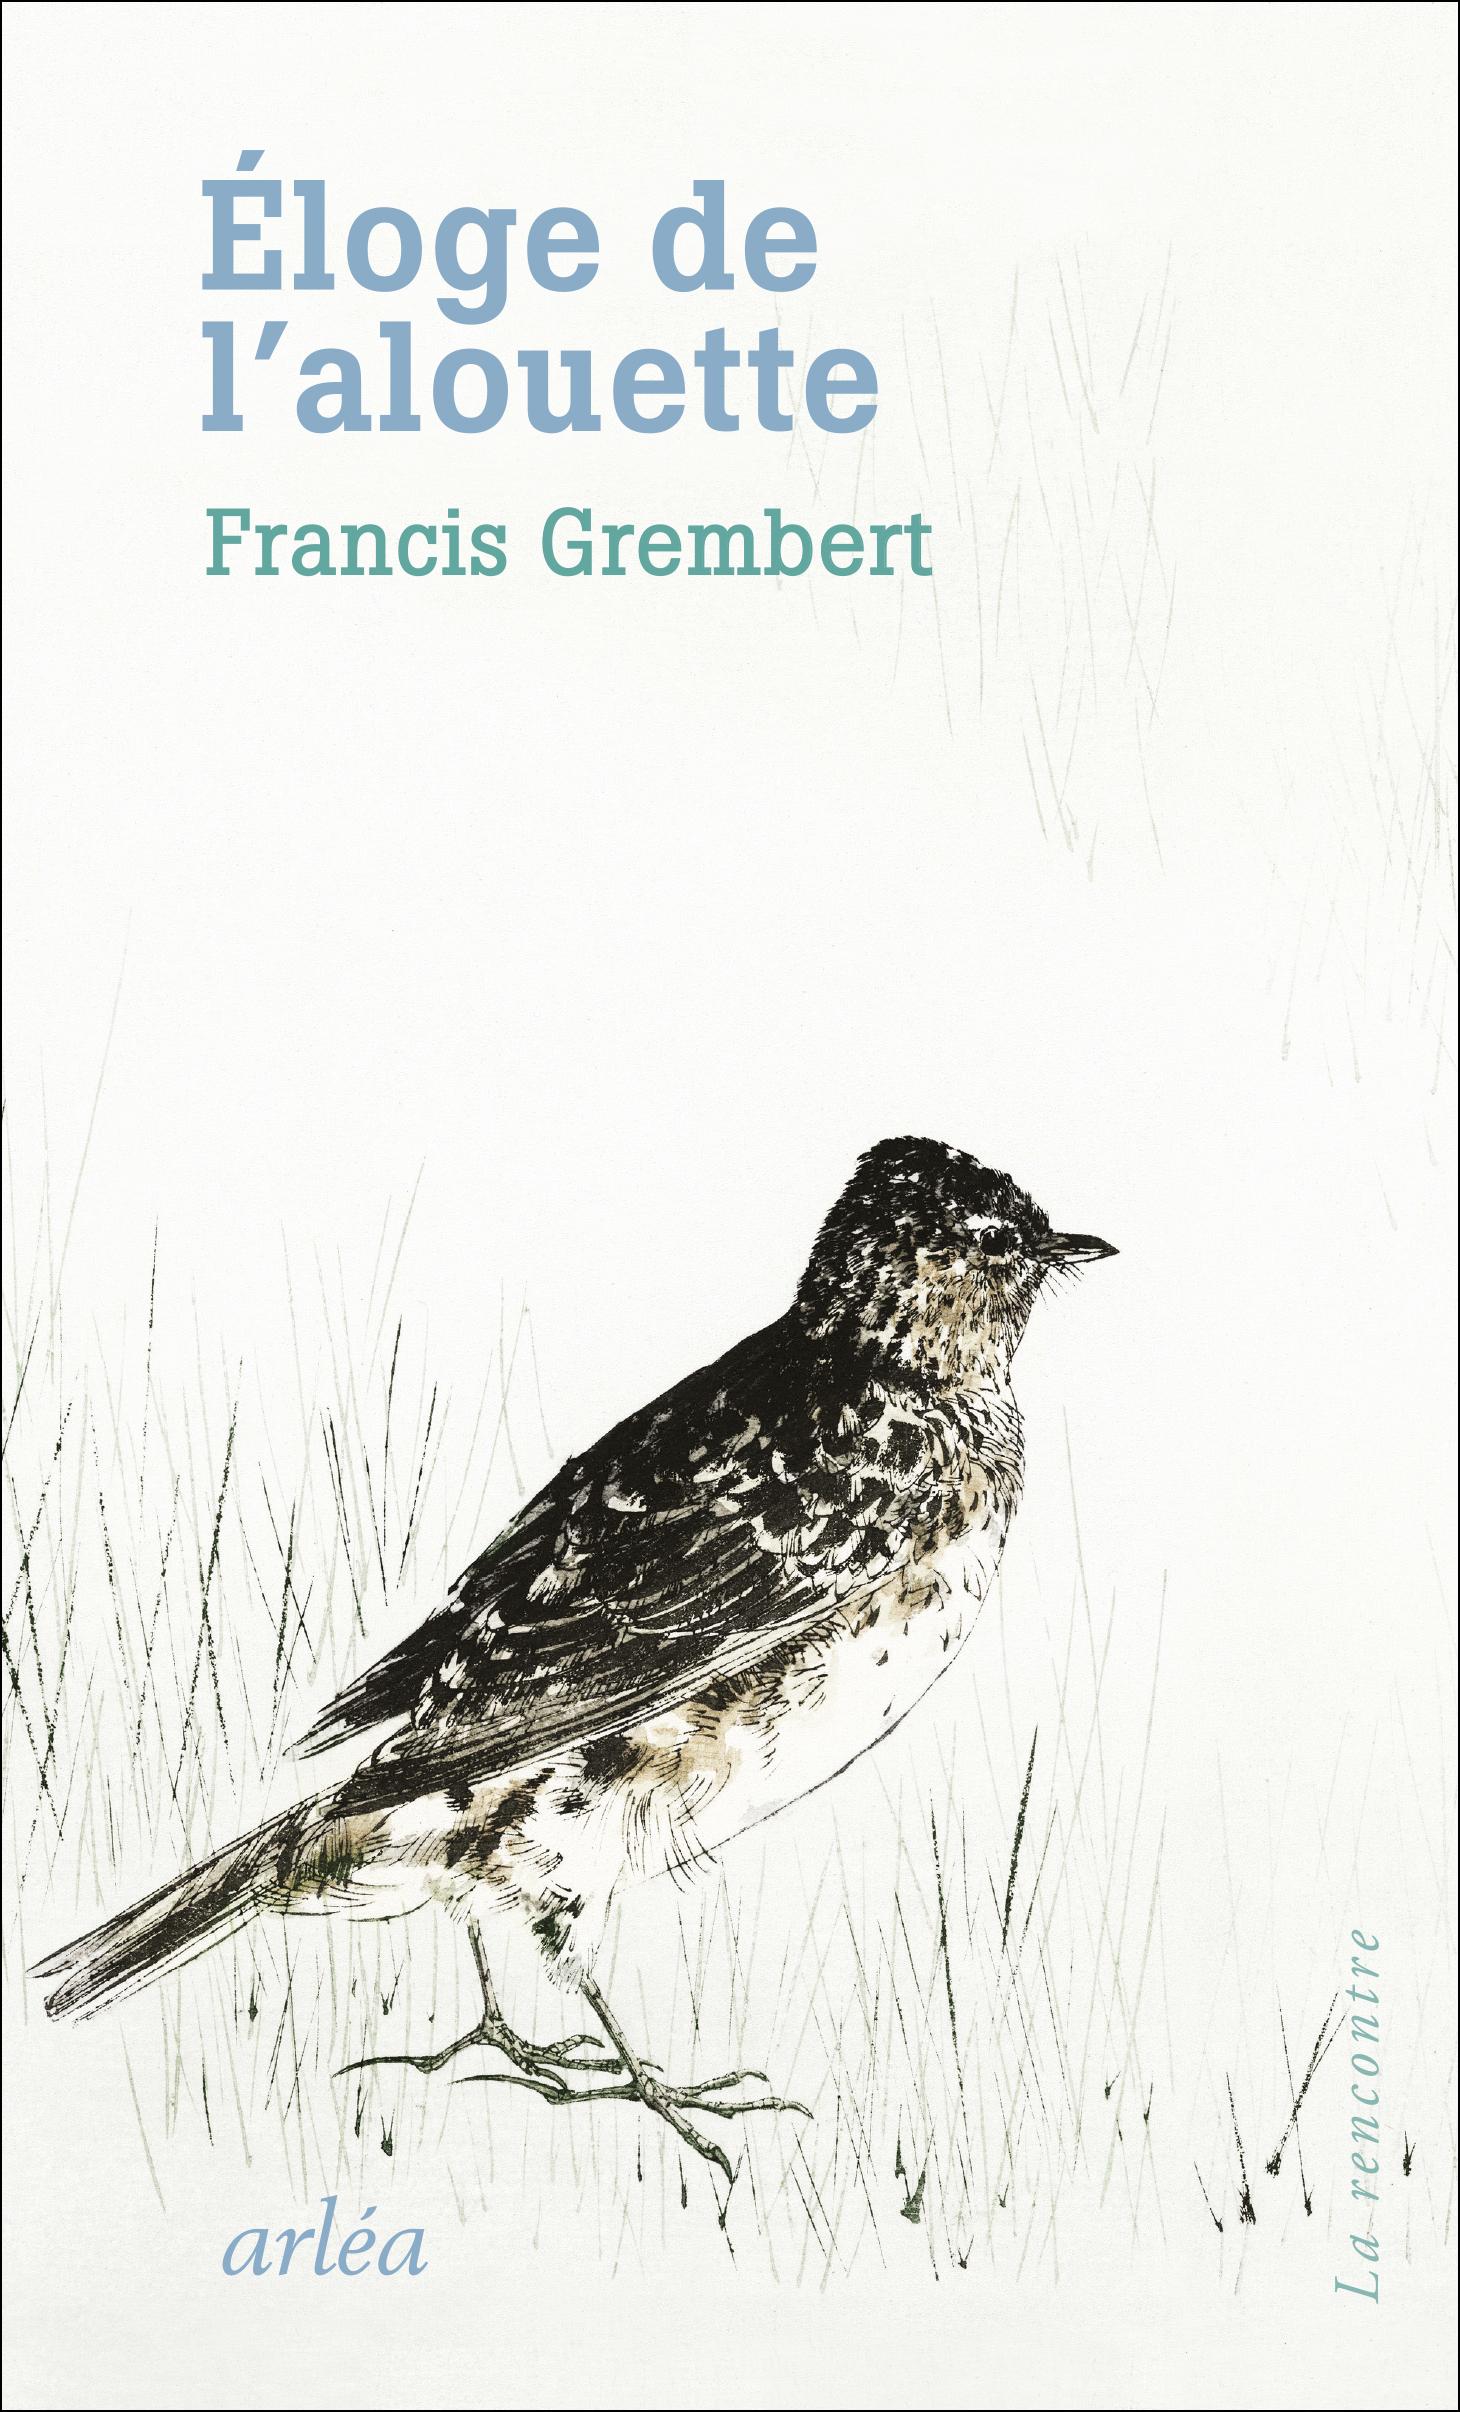 Couverture du livre "Eloge de l'alouette" de Francis Grembert. [Edition Arléa]